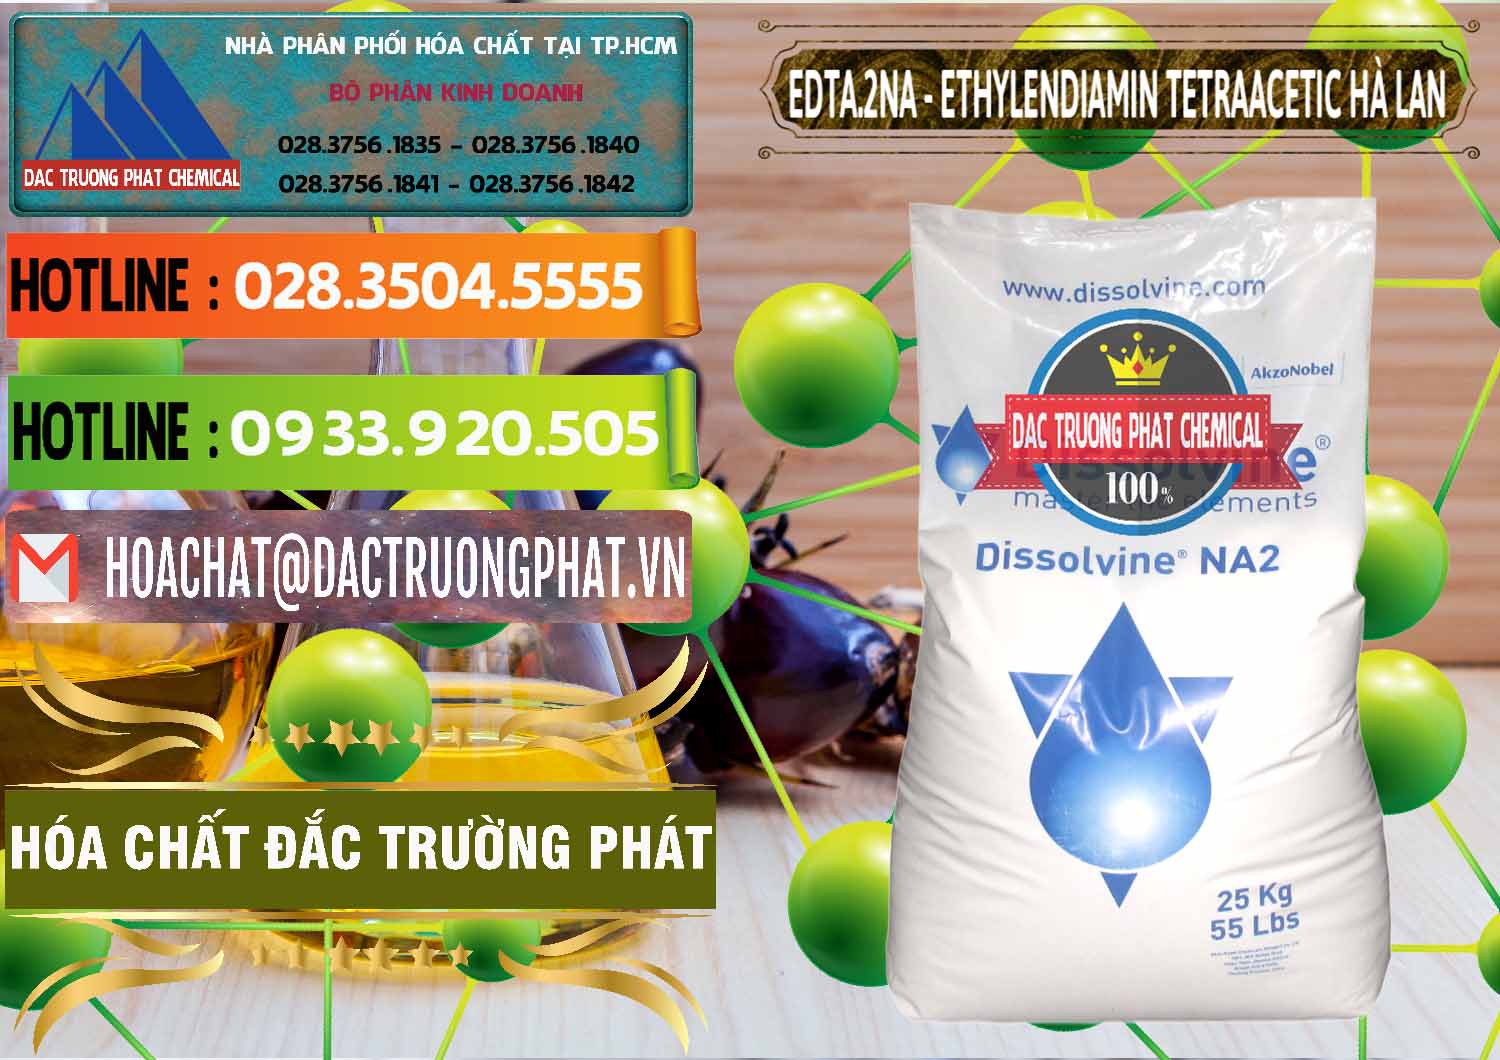 Đơn vị phân phối _ bán EDTA.2NA - Ethylendiamin Tetraacetic Dissolvine Hà Lan Netherlands - 0064 - Nhà phân phối & kinh doanh hóa chất tại TP.HCM - cungcaphoachat.com.vn